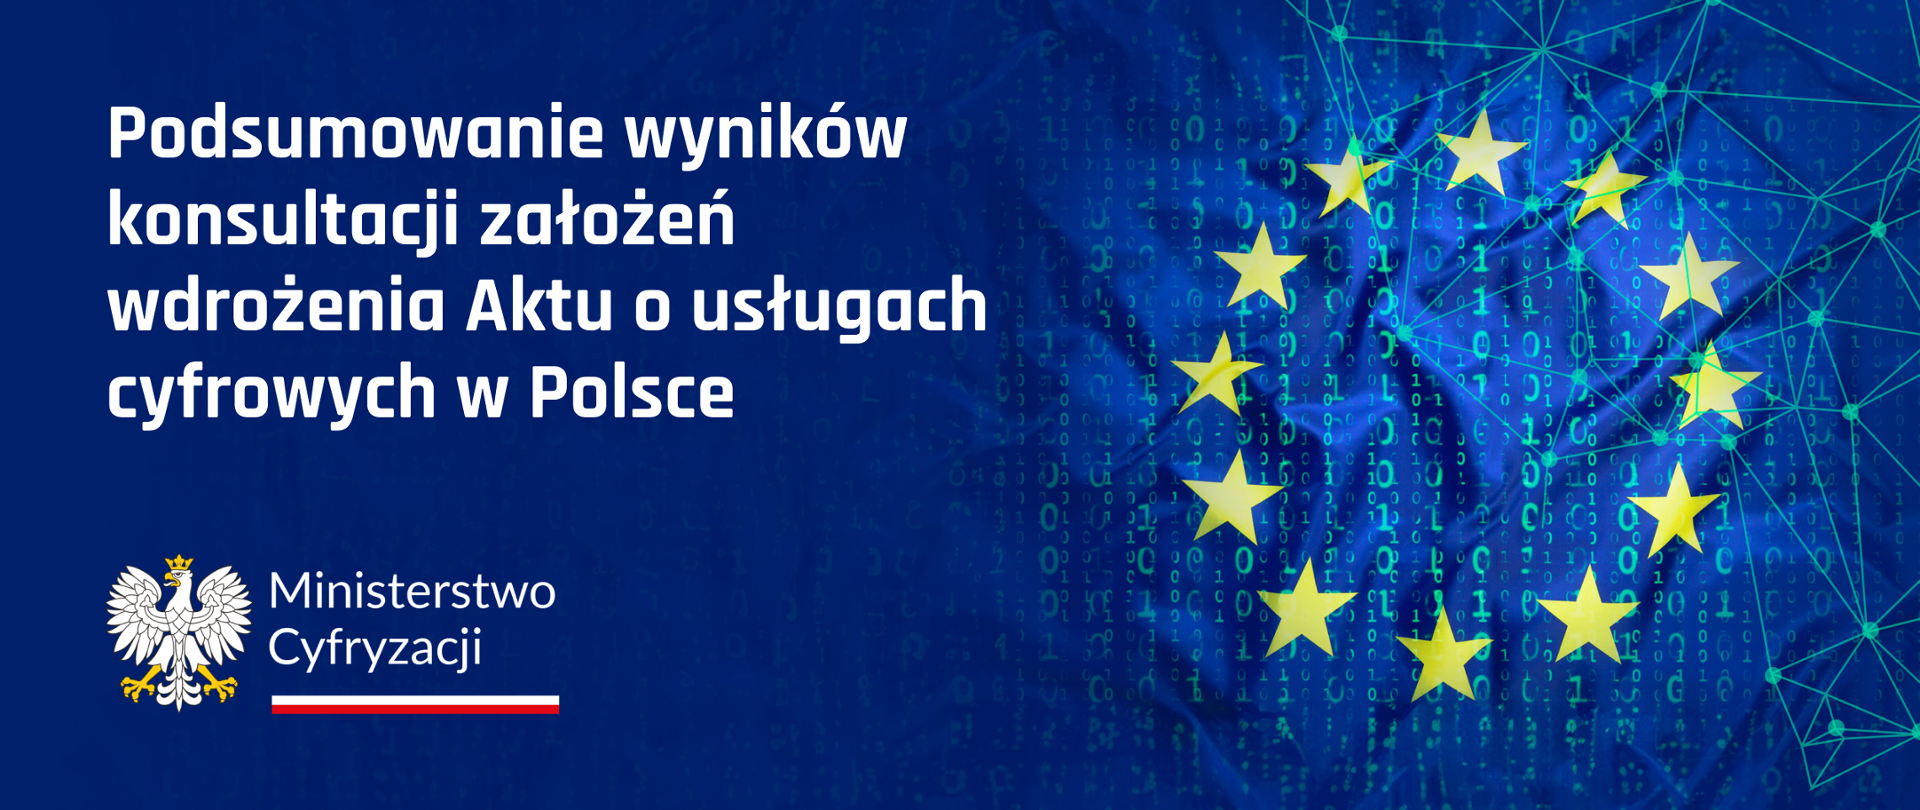 Na granatowym tle napis - Podsumowanie wyników konsultacji założeń wdrożenia Aktu o usługach cyfrowych w Polsce. W lewym dolnym rogu - Logo Ministerstwa Cyfryzacji, po prawej stronie oznaczenie Unii Europejskiej. 